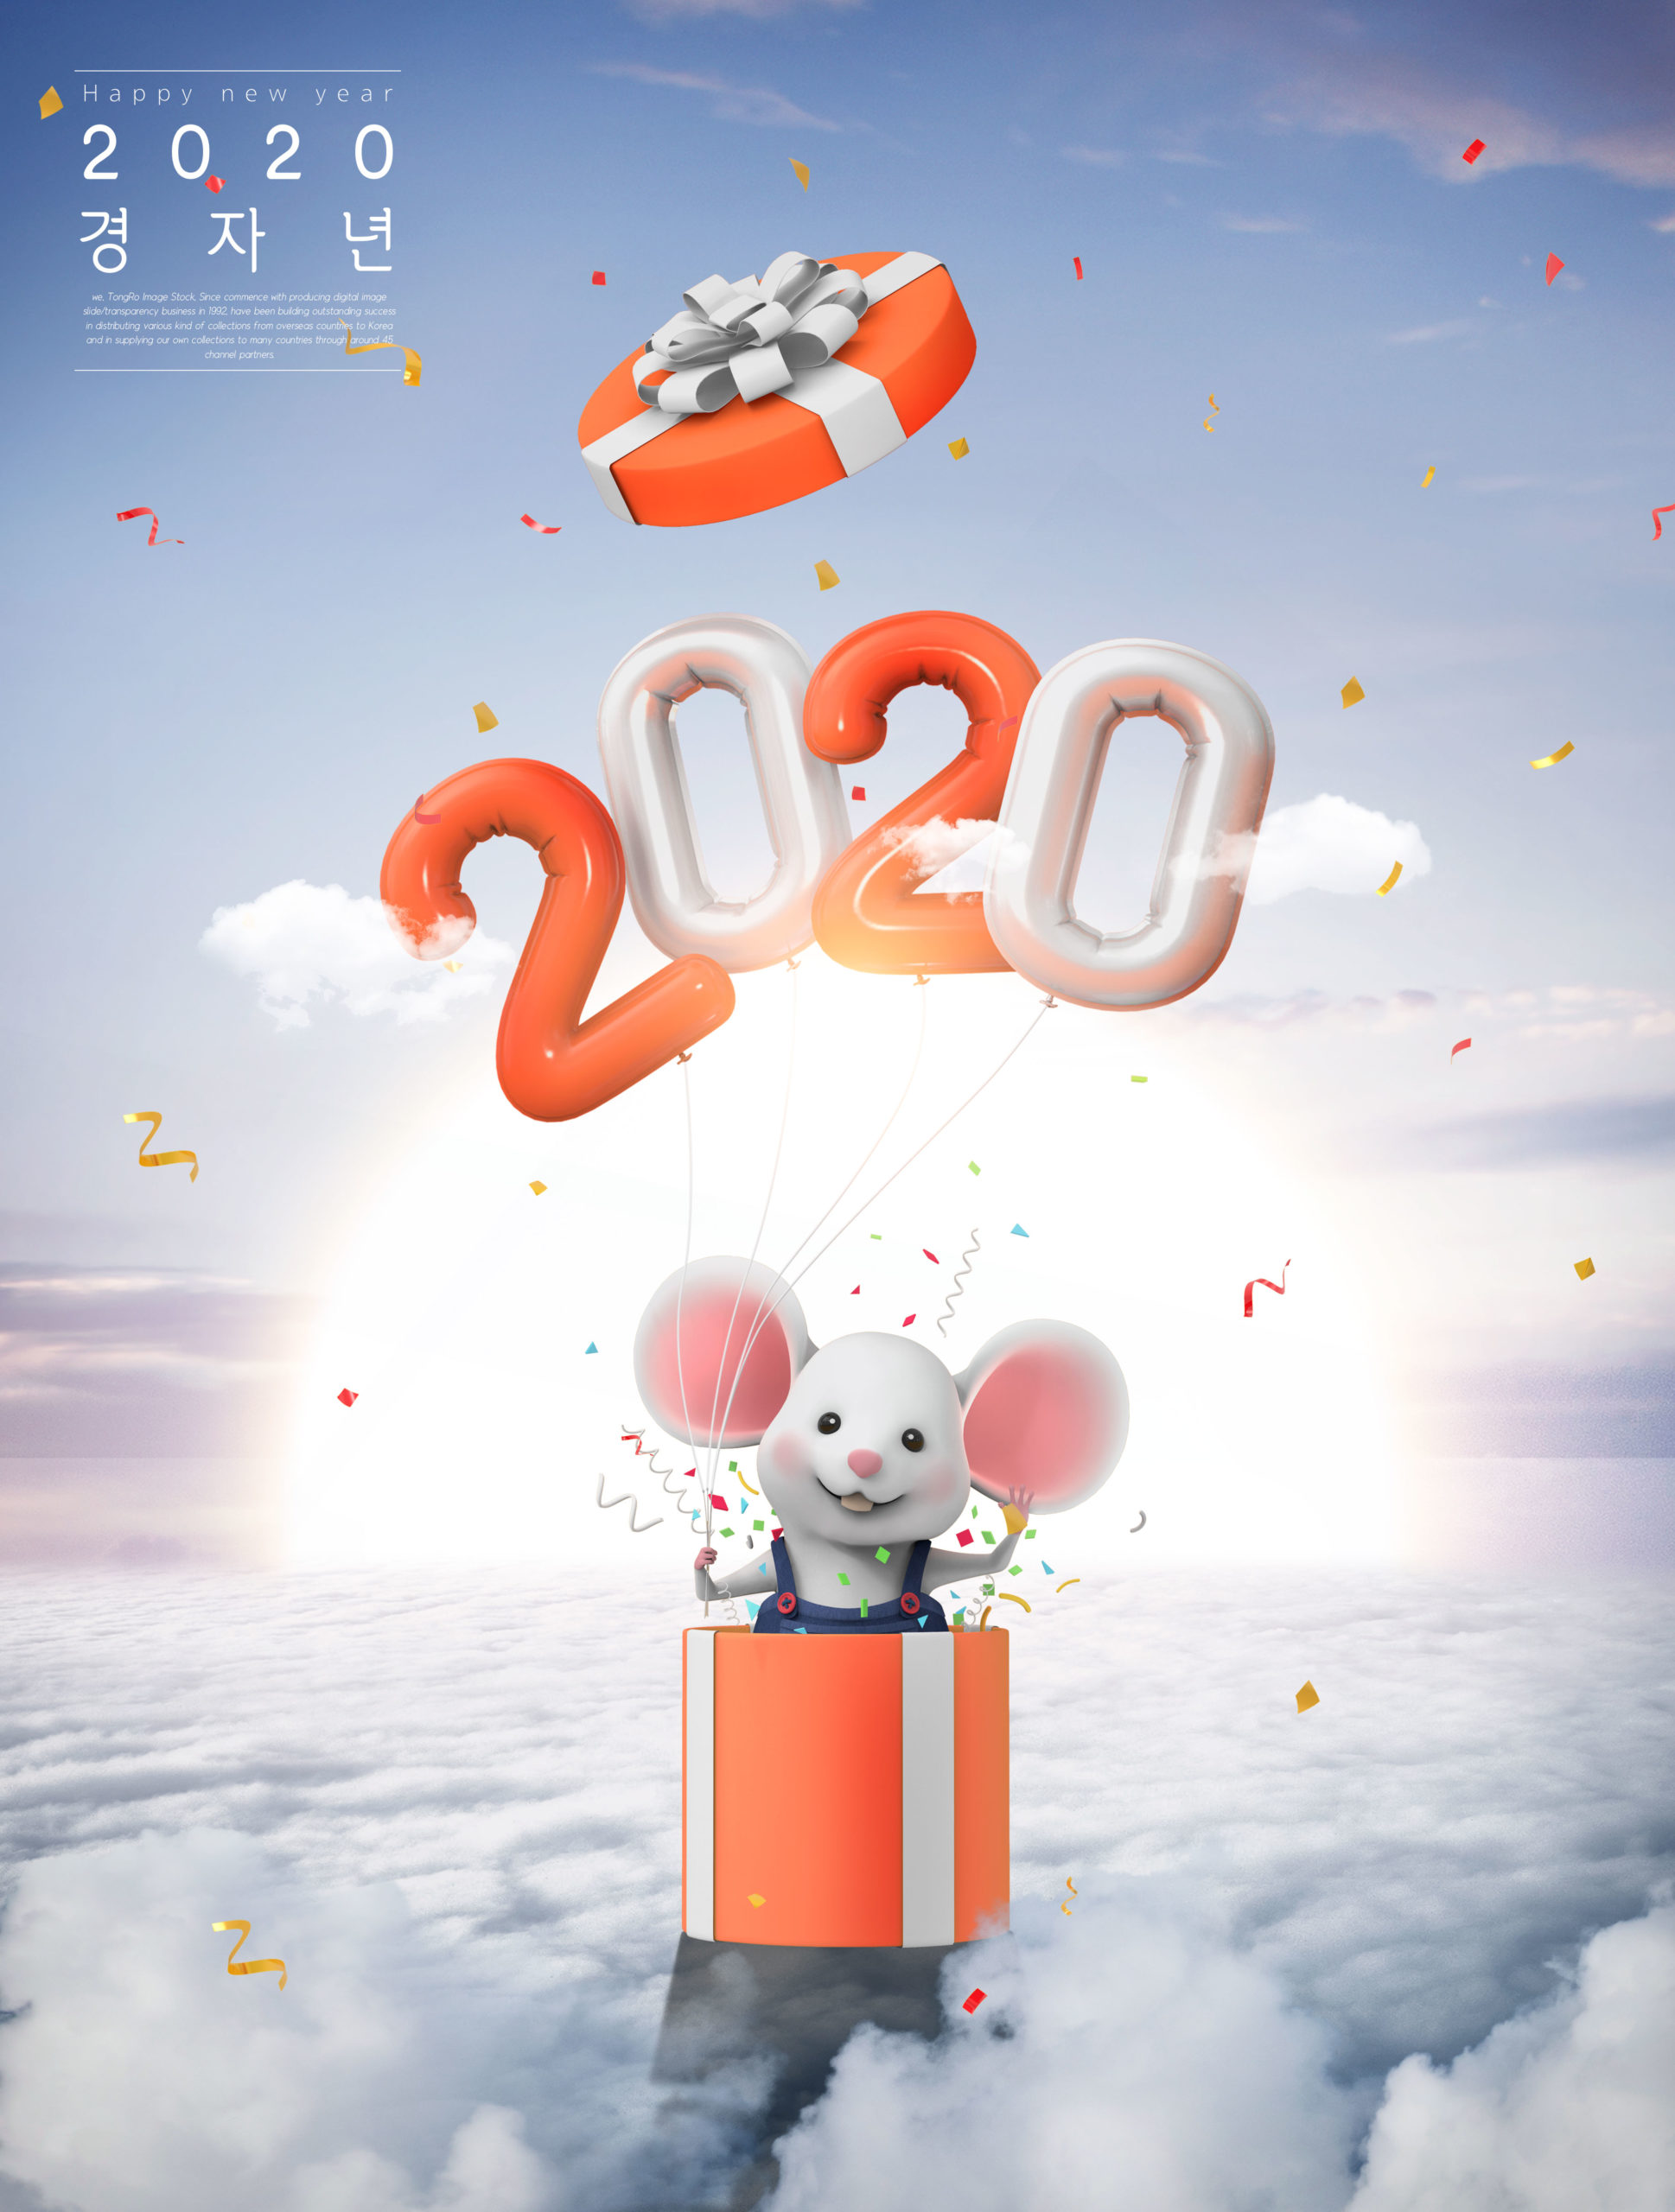 2020鼠年祝福主题云层梦幻背景海报PSD素材第一素材精选模板插图